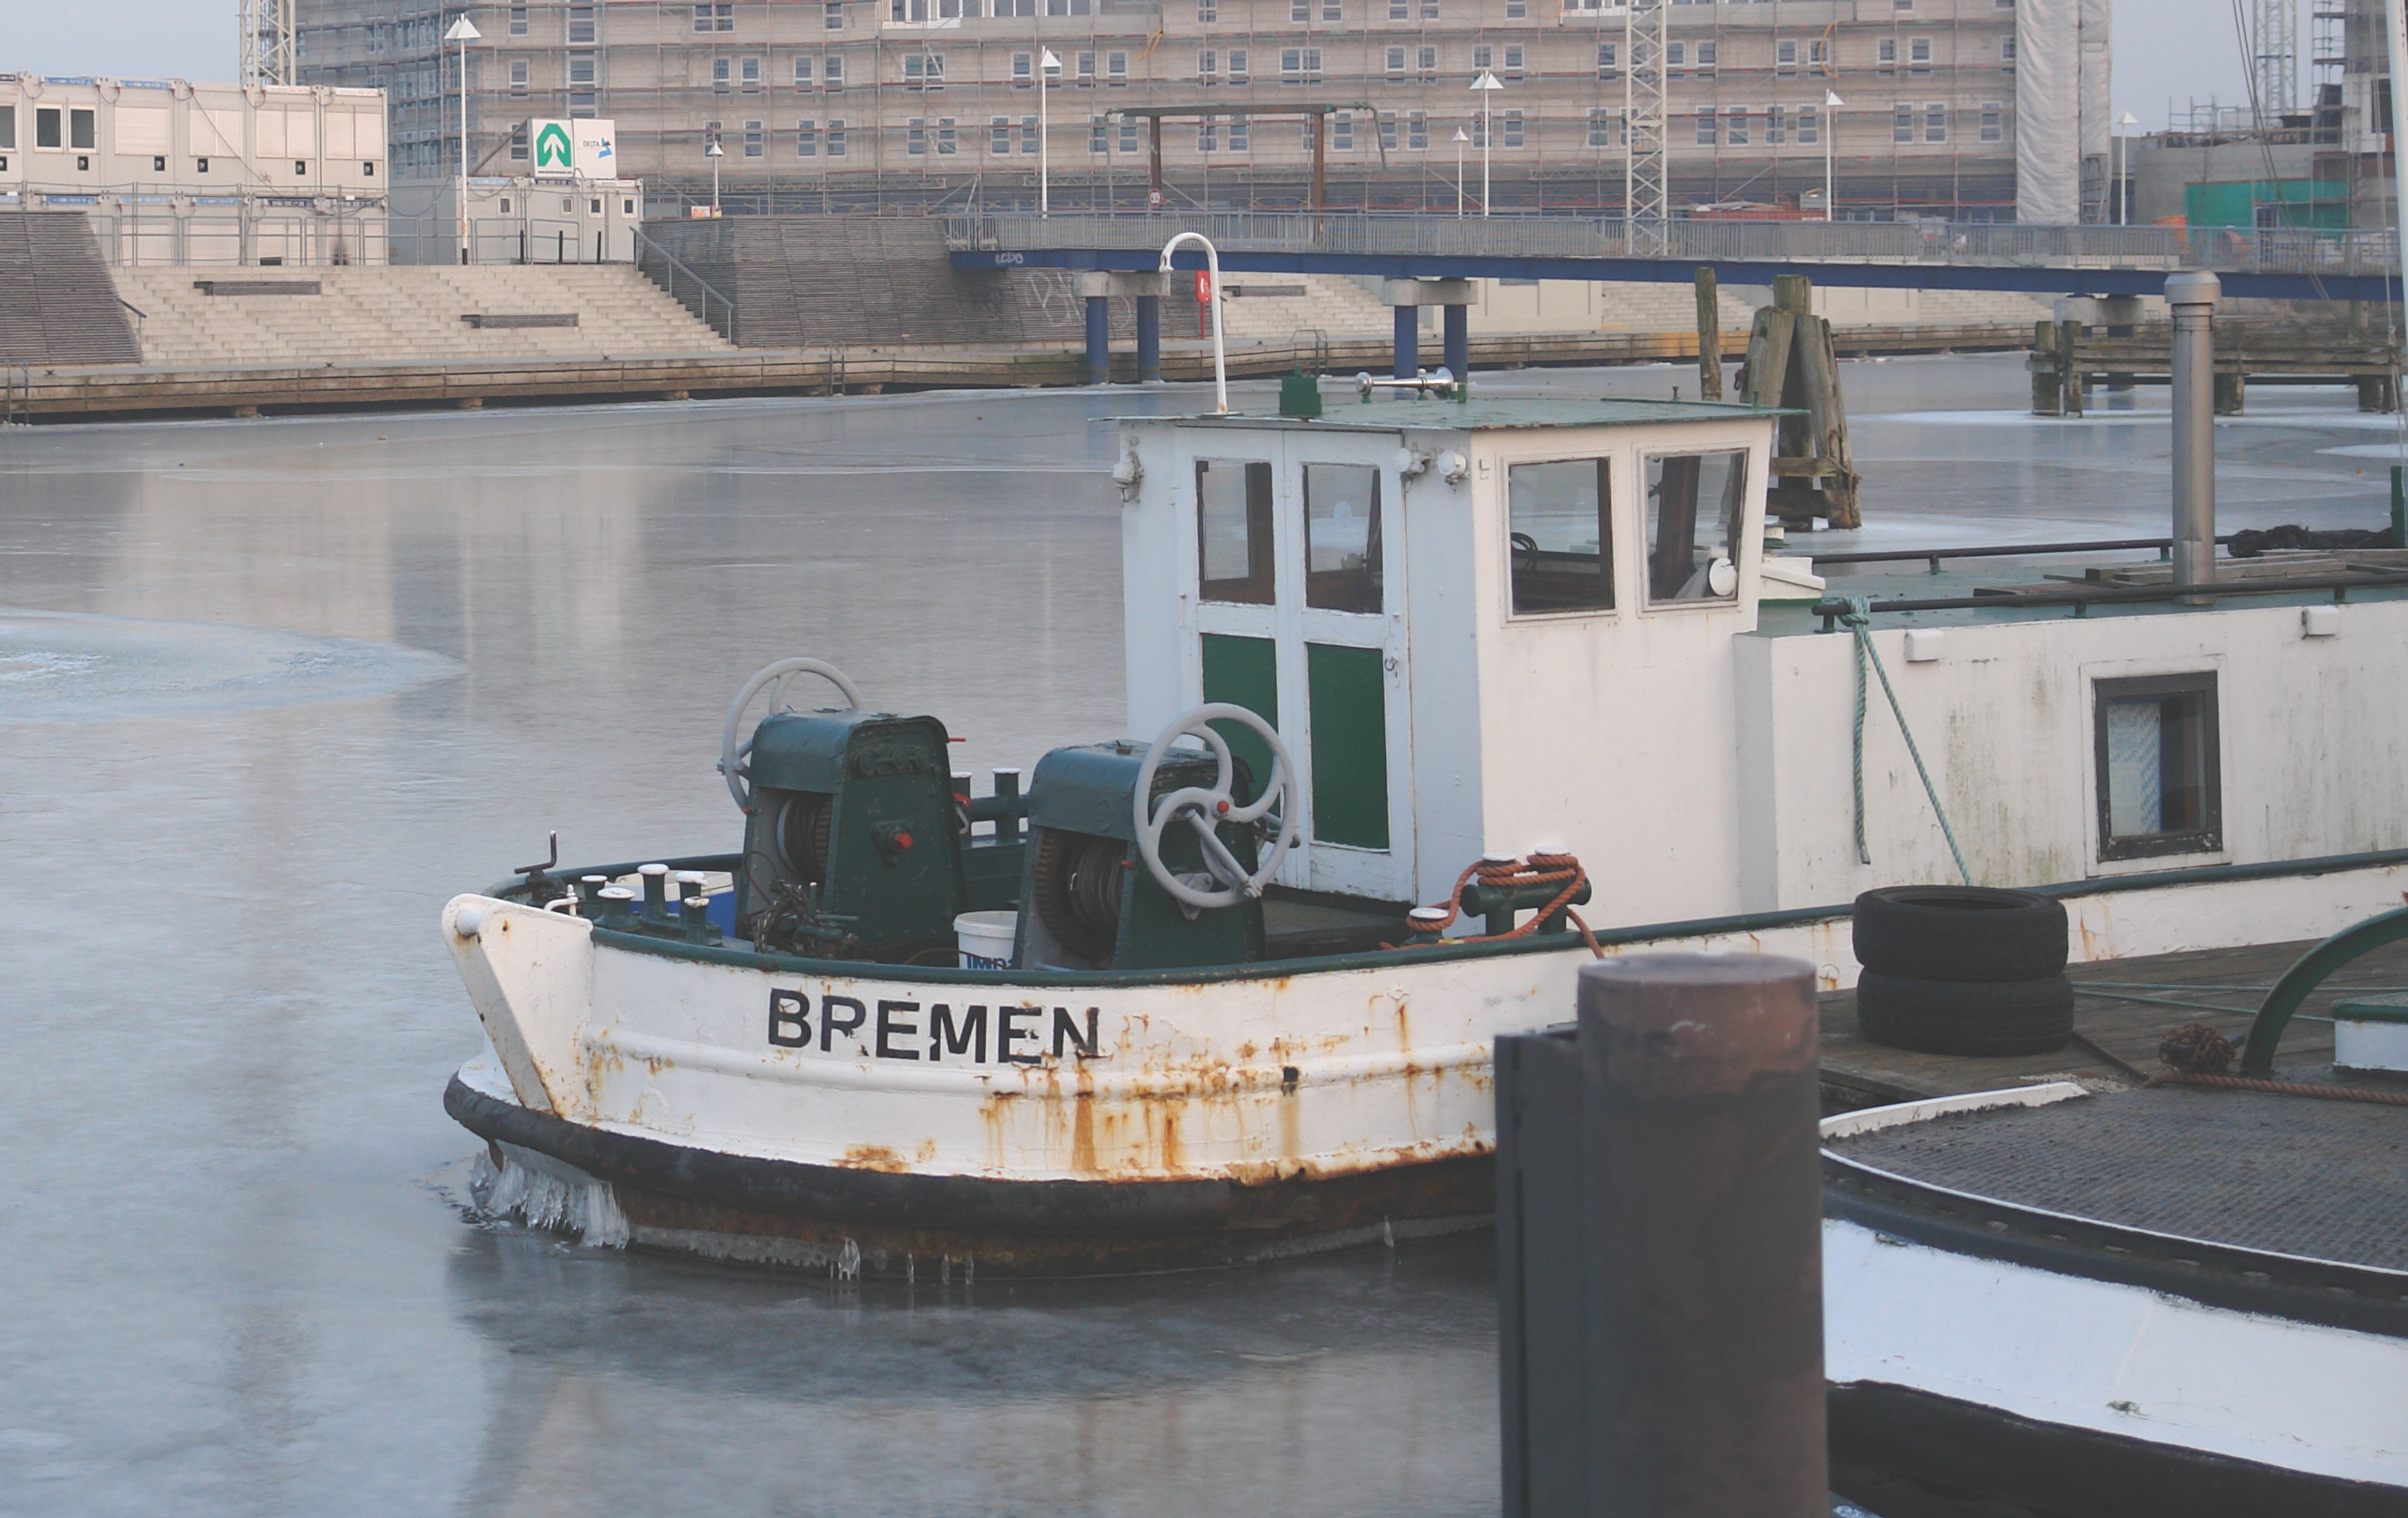 Das Foto zeigt ein Boot namens Bremen.